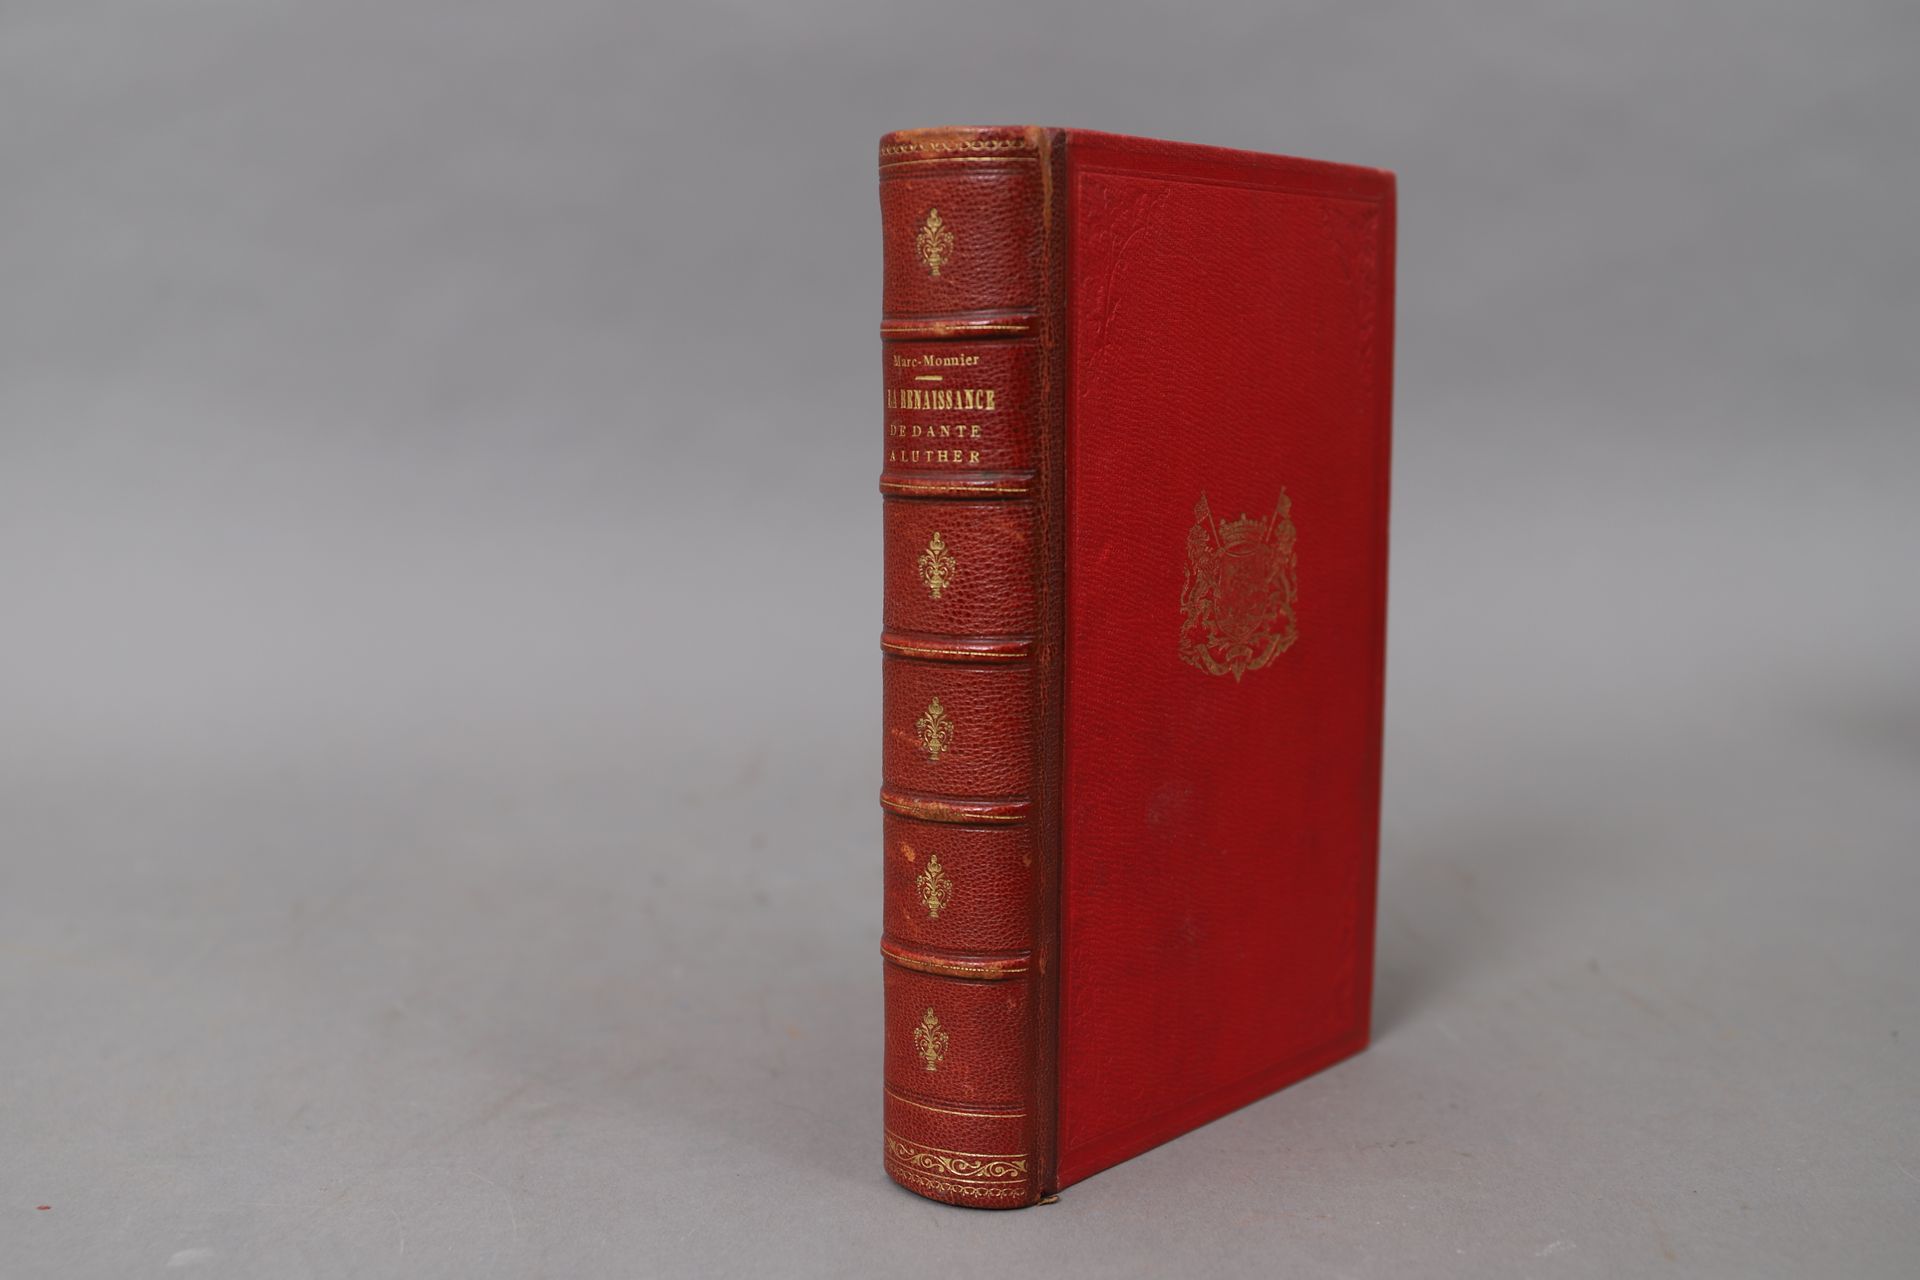 Null EL RENACIMIENTO de DANTE a LUTHER.

1889, 

atado en medio rojo de la angus&hellip;